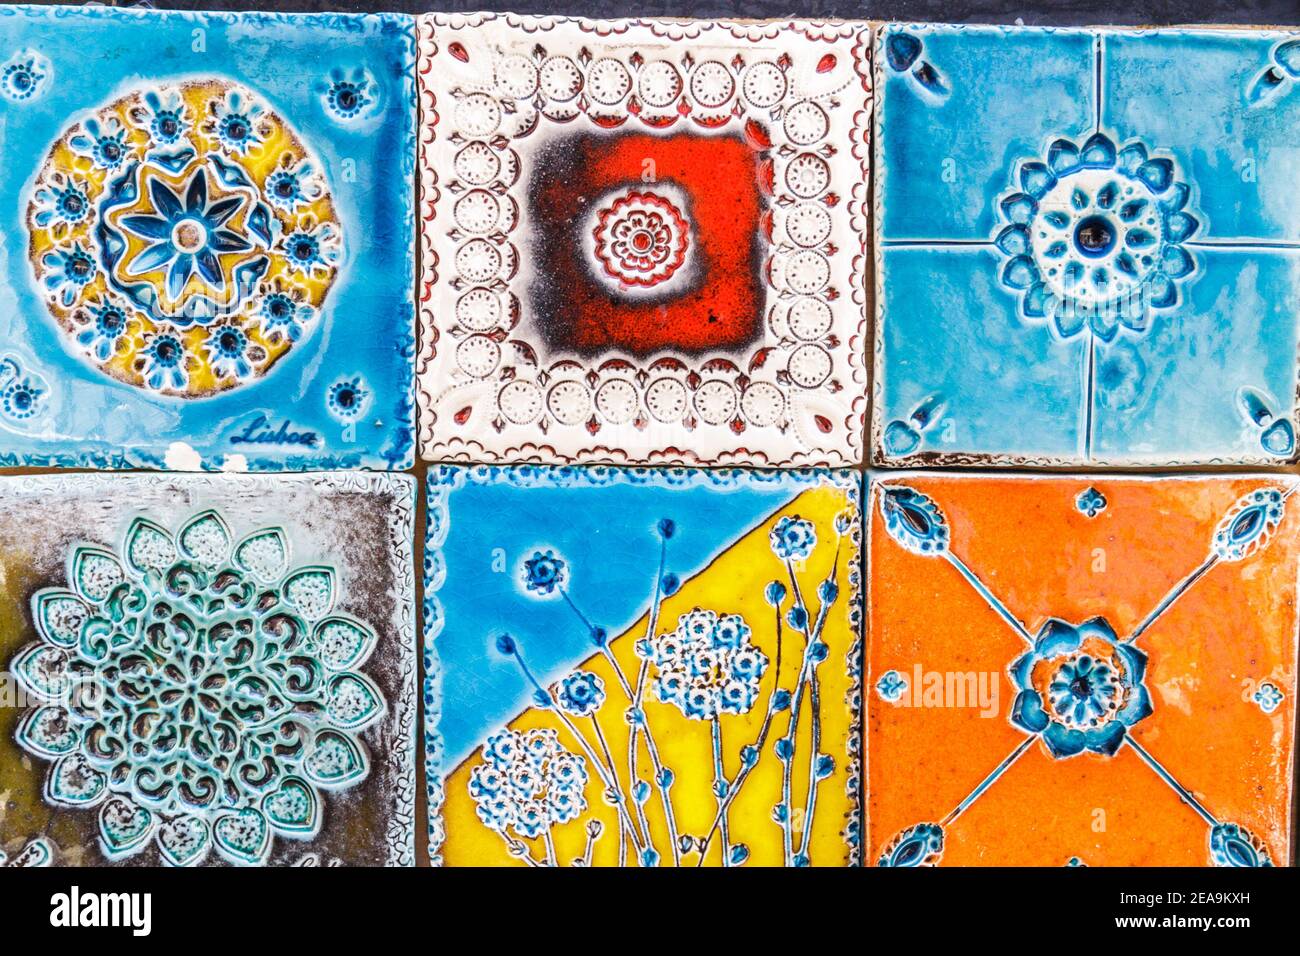 Portugal Lisboa centro histórico centro comercial tienda de regalos souvenirs cerámica azulejos tallados pintado ornamental arte diseño artesanal Foto de stock